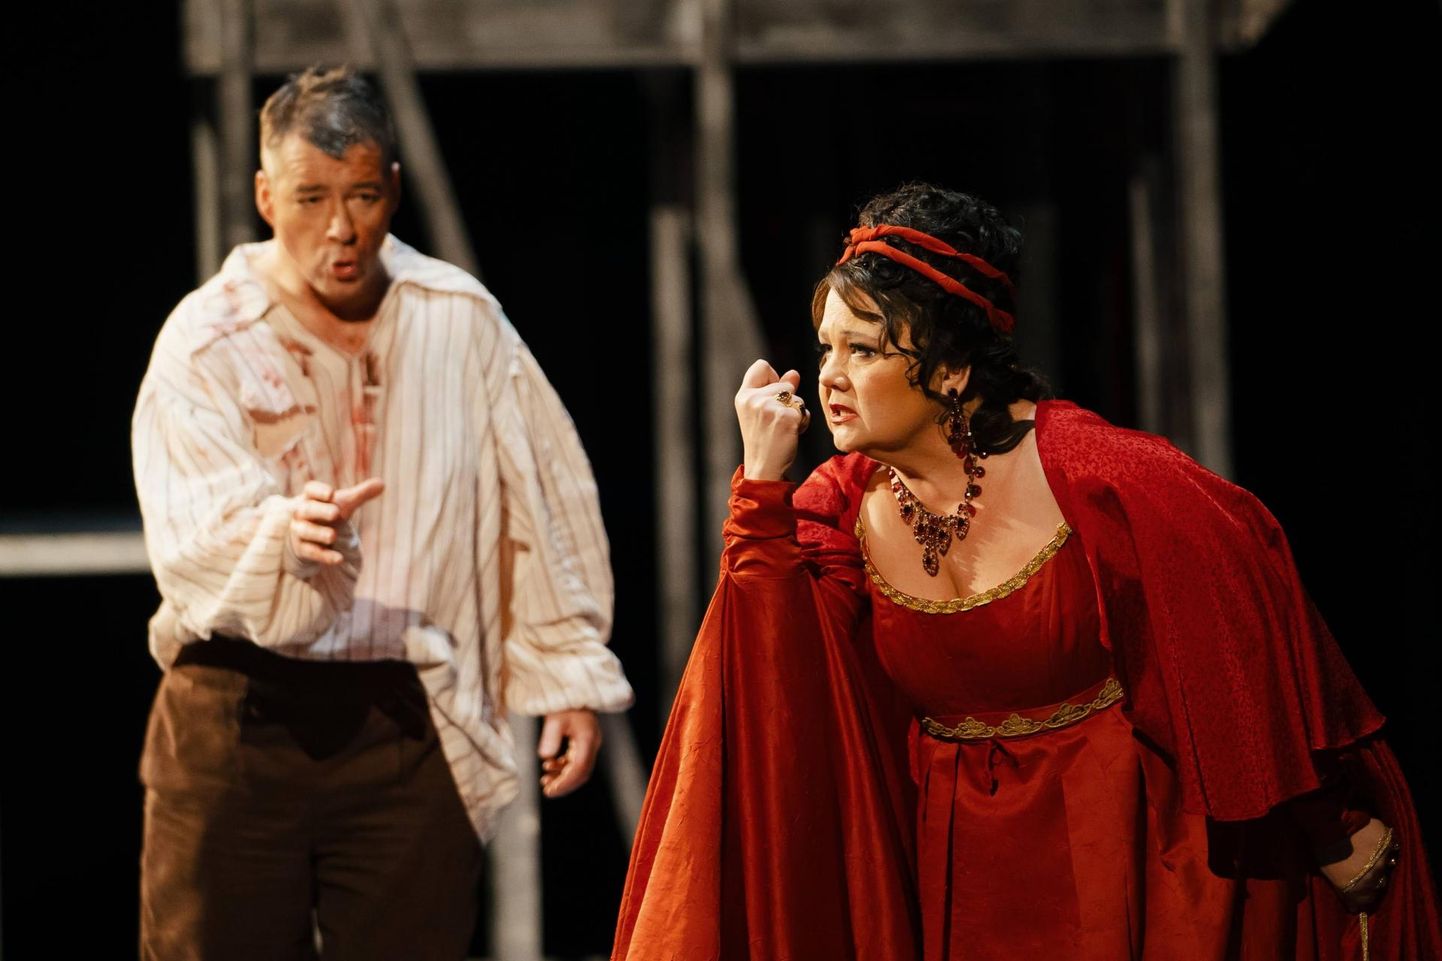 Heli Veskus ooperi "Tosca" nimirollis Moskva Suure Teatri laval, Cavaradossi rollis Luc Robert.